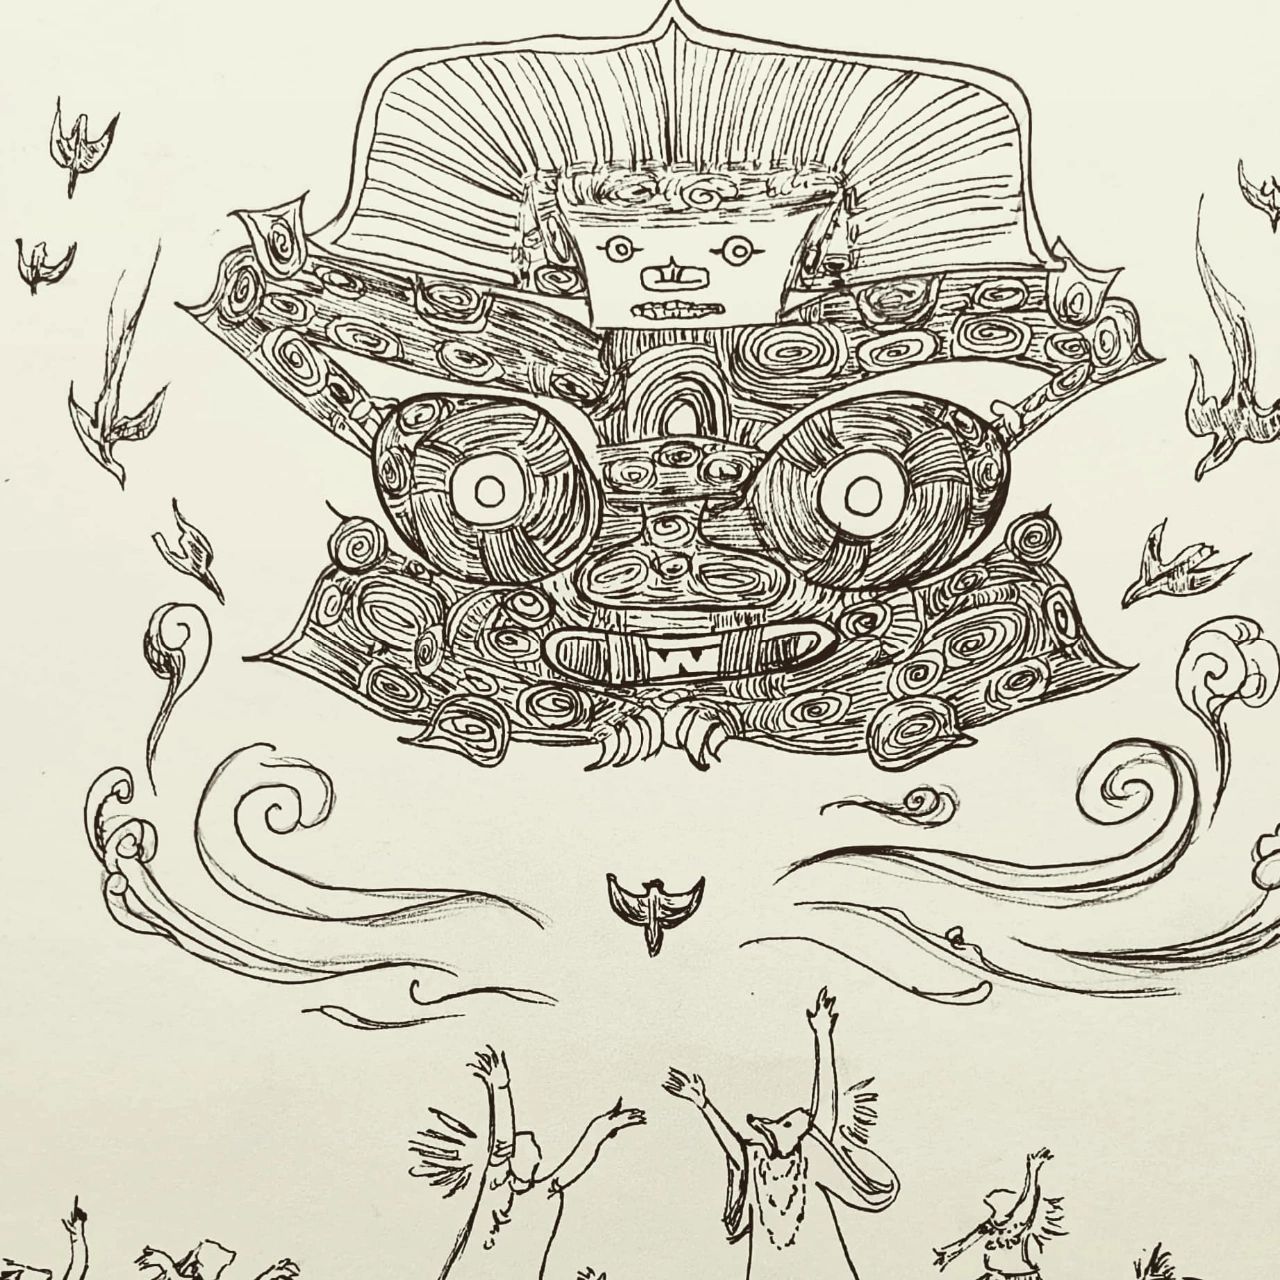 玉琮—神人兽面纹 今天画了良渚玉琮的神人兽面纹